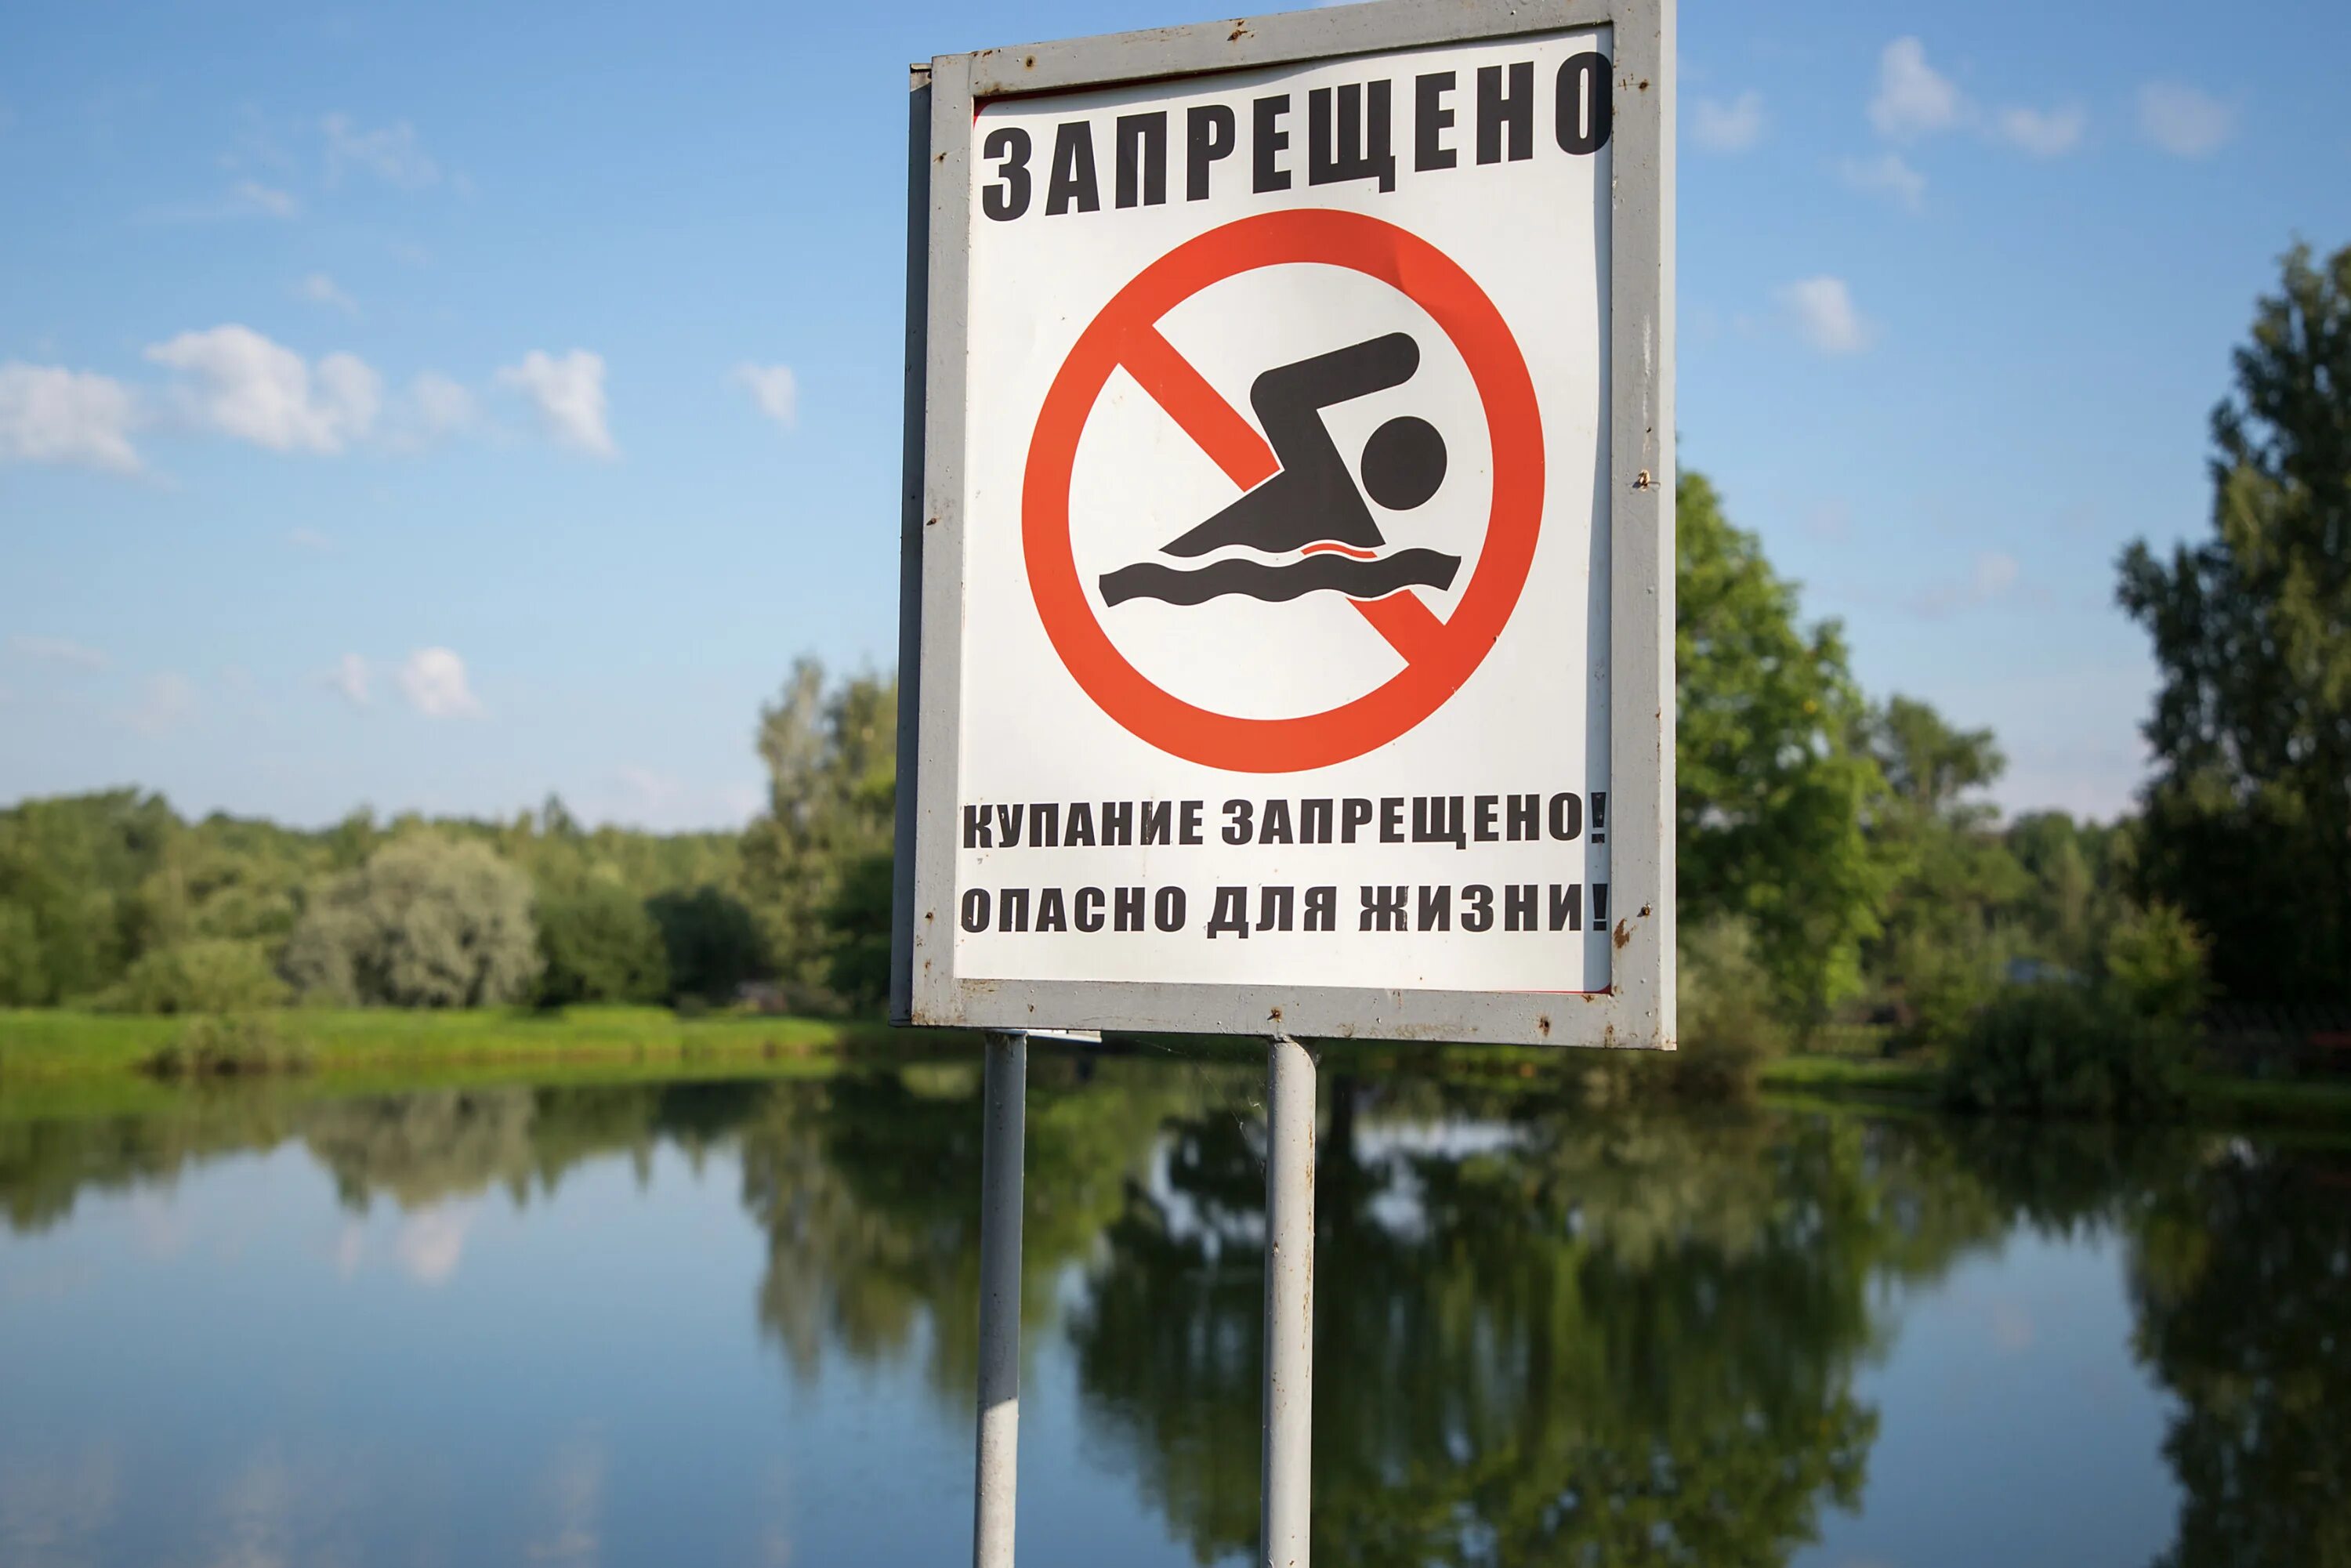 Купаться запрещено картинки. Купаться запрещено. Купание запрещено табличка. Знаки запрещающие купание в водоемах. Купаться запрещено опасно для жизни.